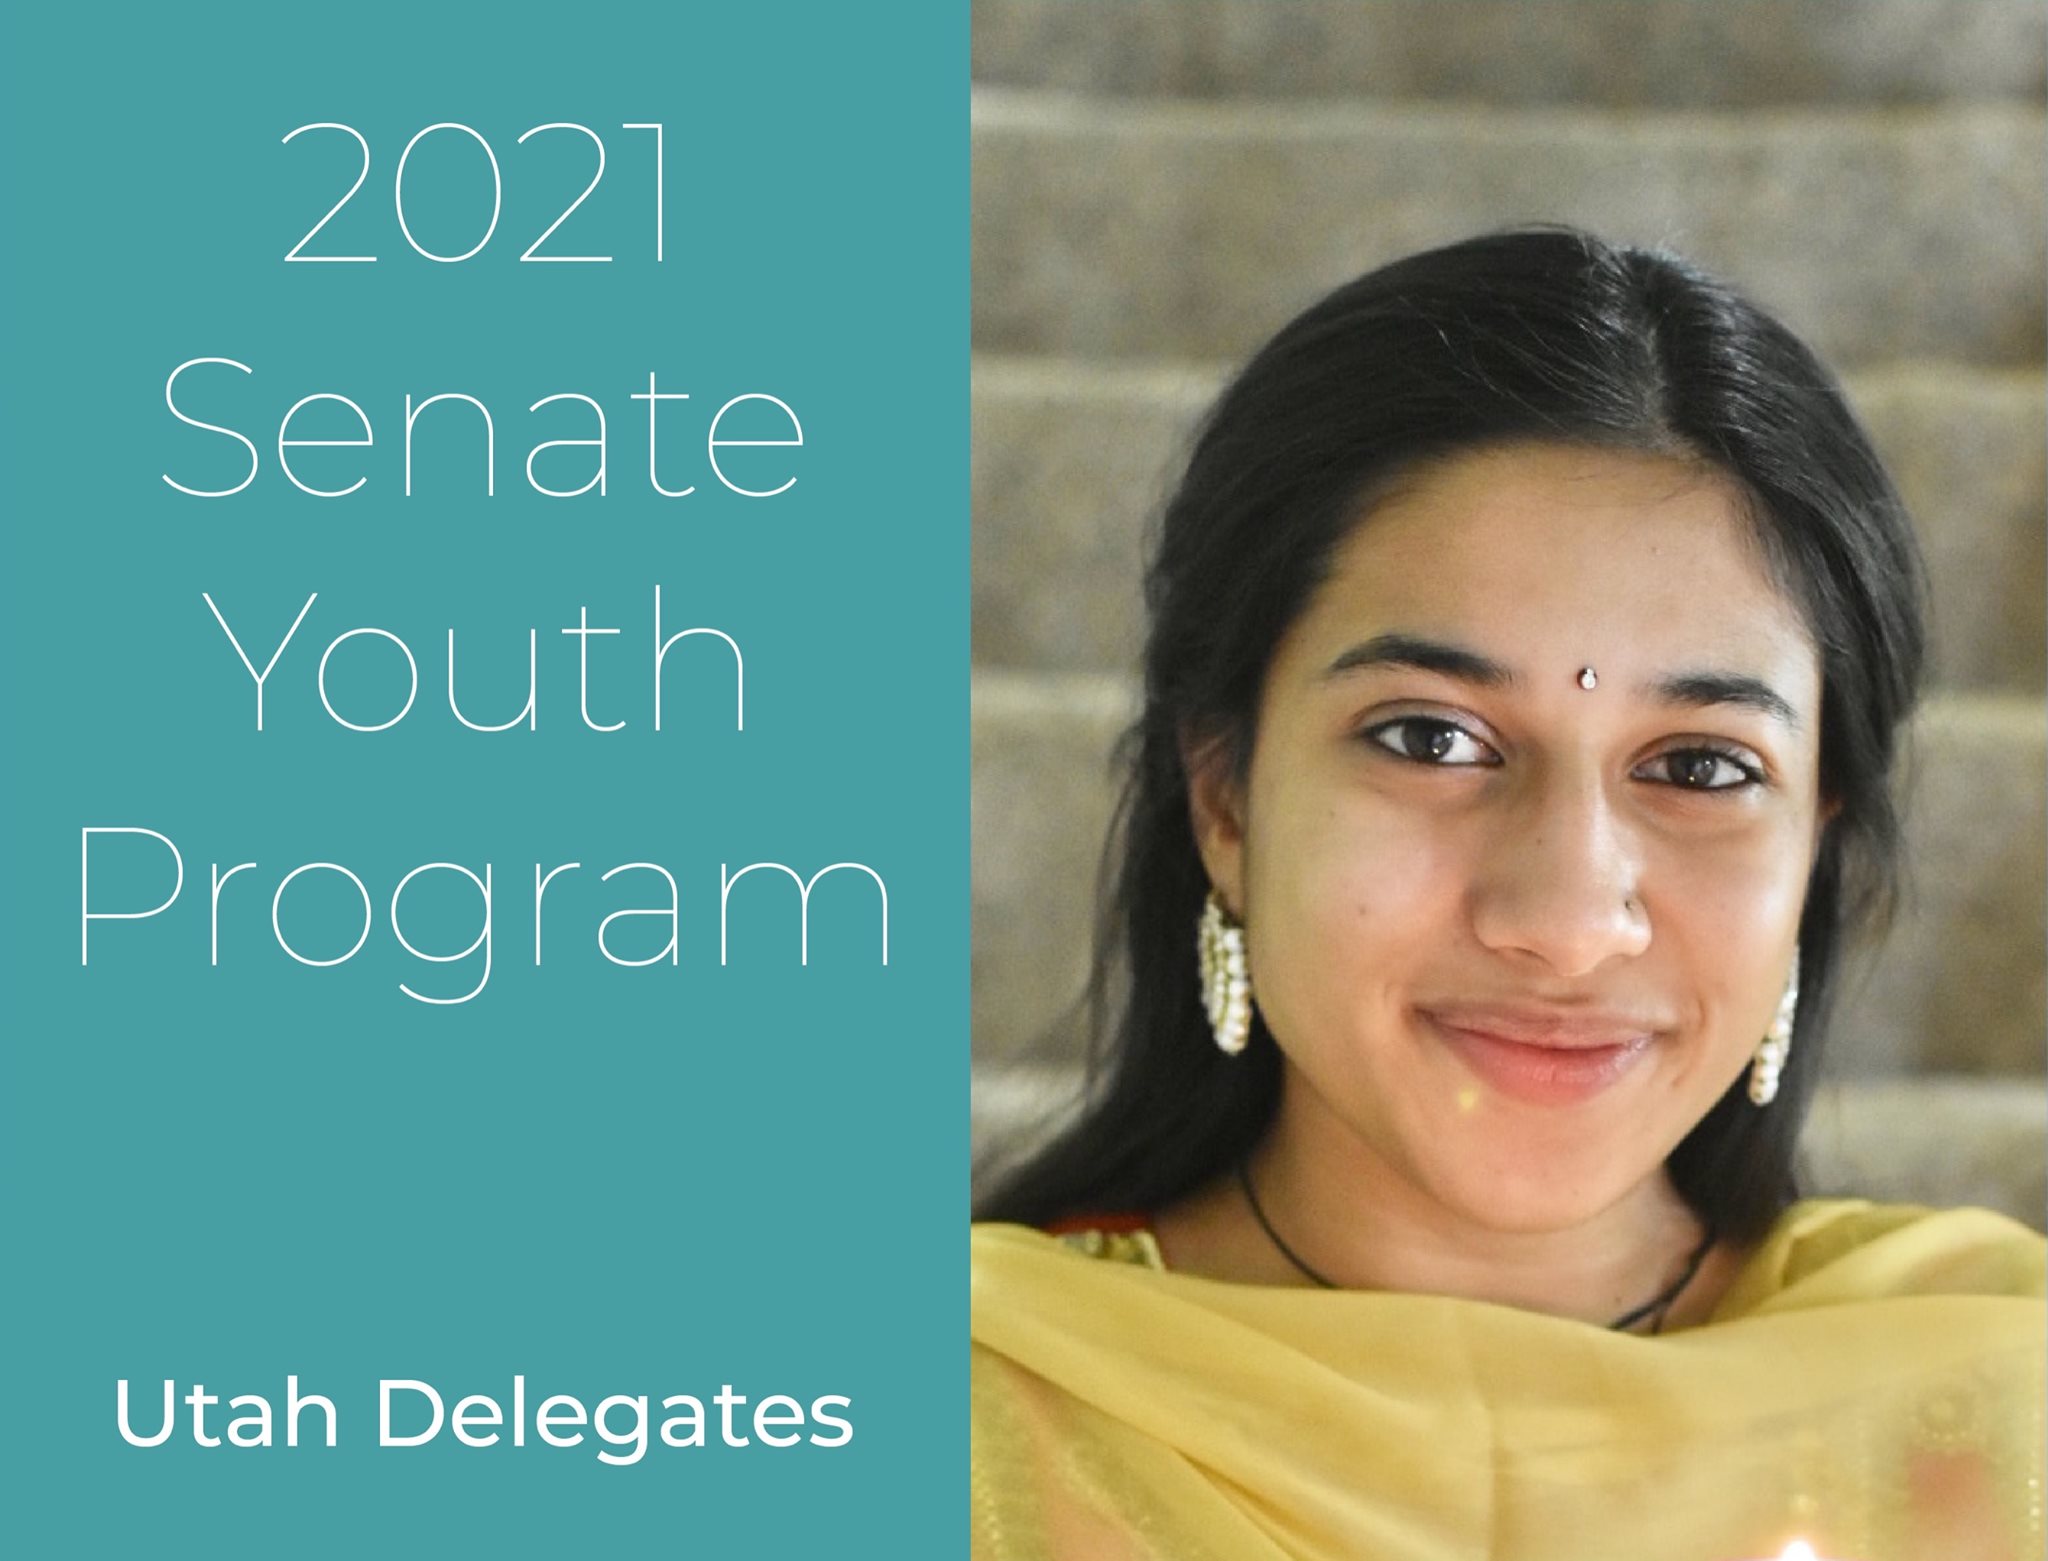 GSD Student Selected to Represent Utah in U.S. Senate Youth Program